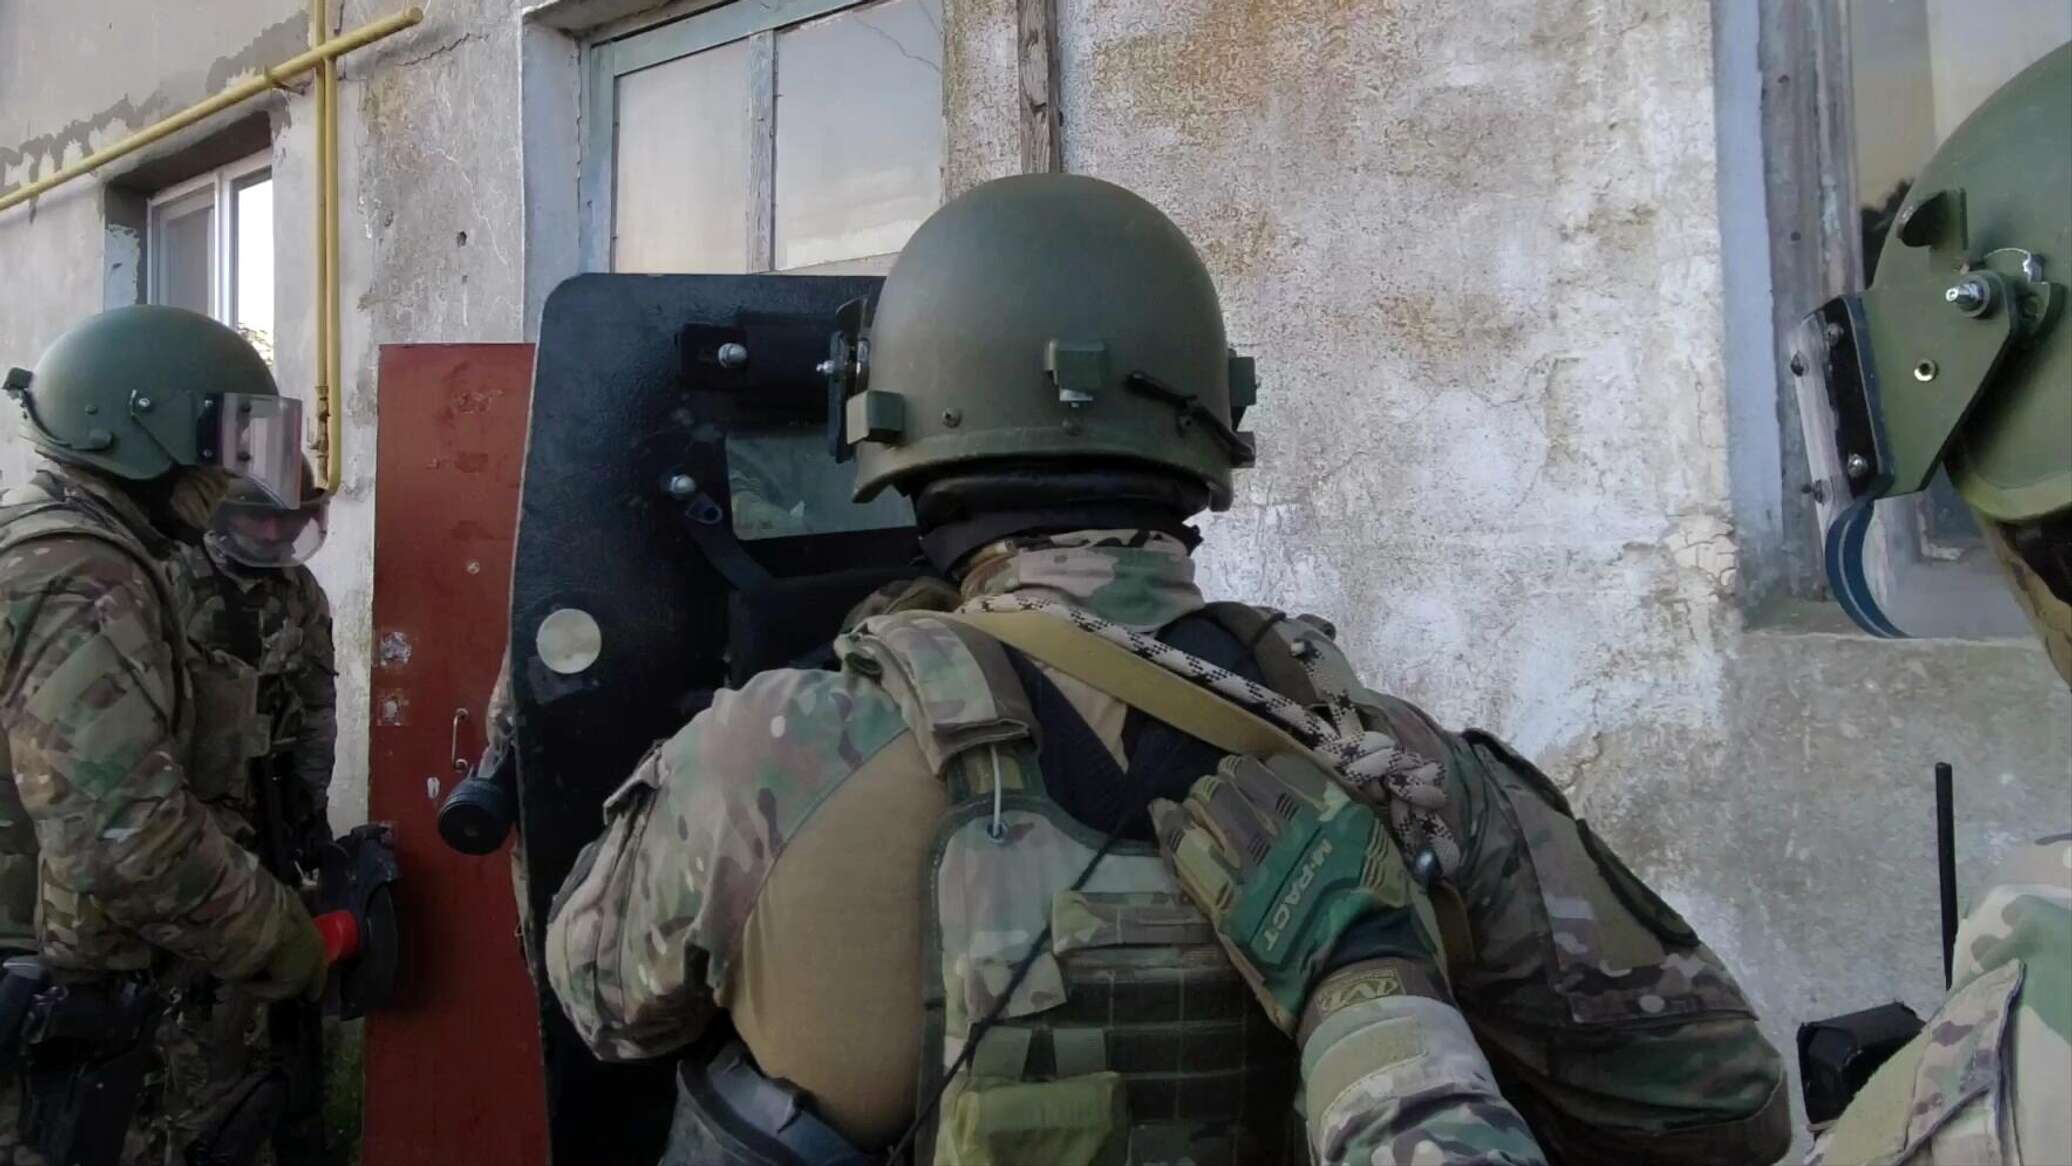 الأمن الفيدرالي الروسي يحاصر أفراد مجموعة إرهابية في جمهورية داغستان